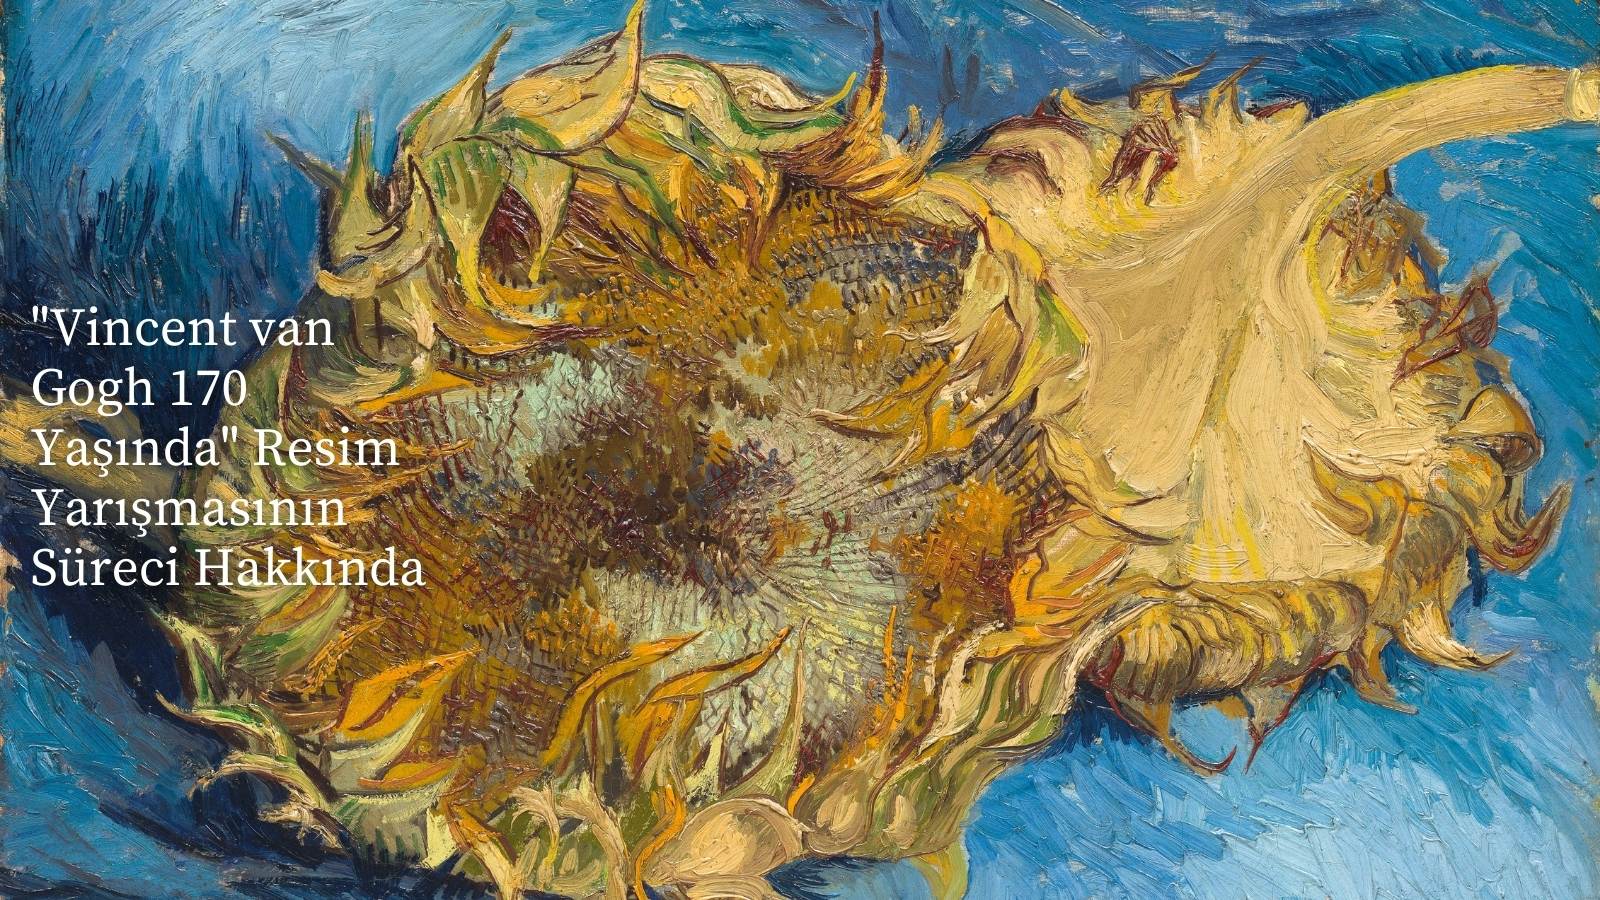 "Vincent van Gogh 170 Yaşında" Resim Yarışmasının Süreci Hakkında